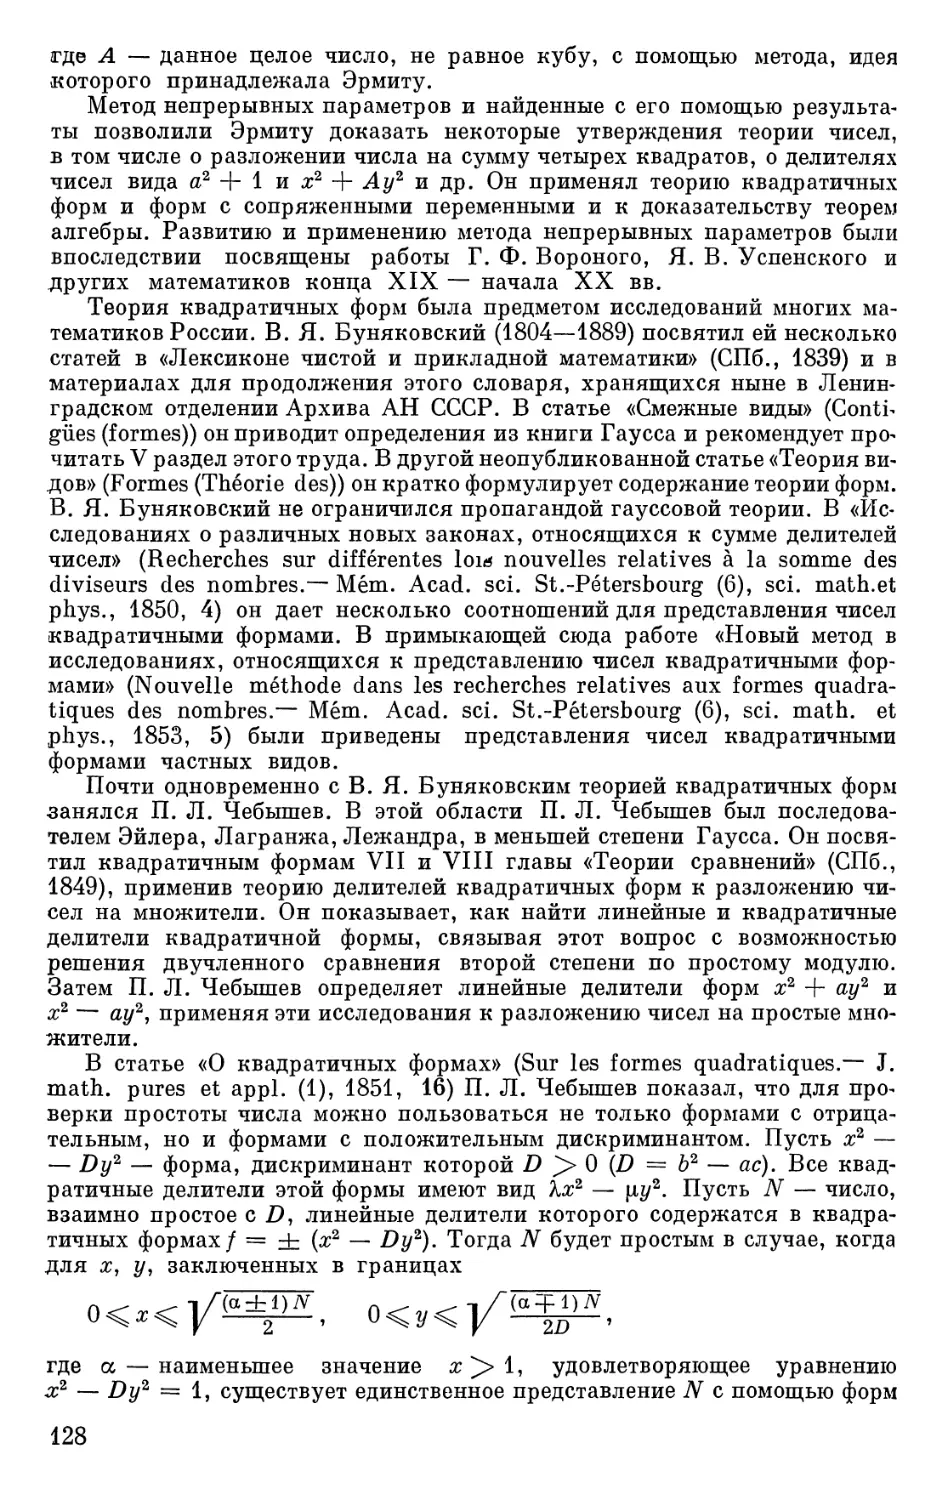 Работы А. Н. Коркина и Е. И. Золотарёва по теории квадратичных форм